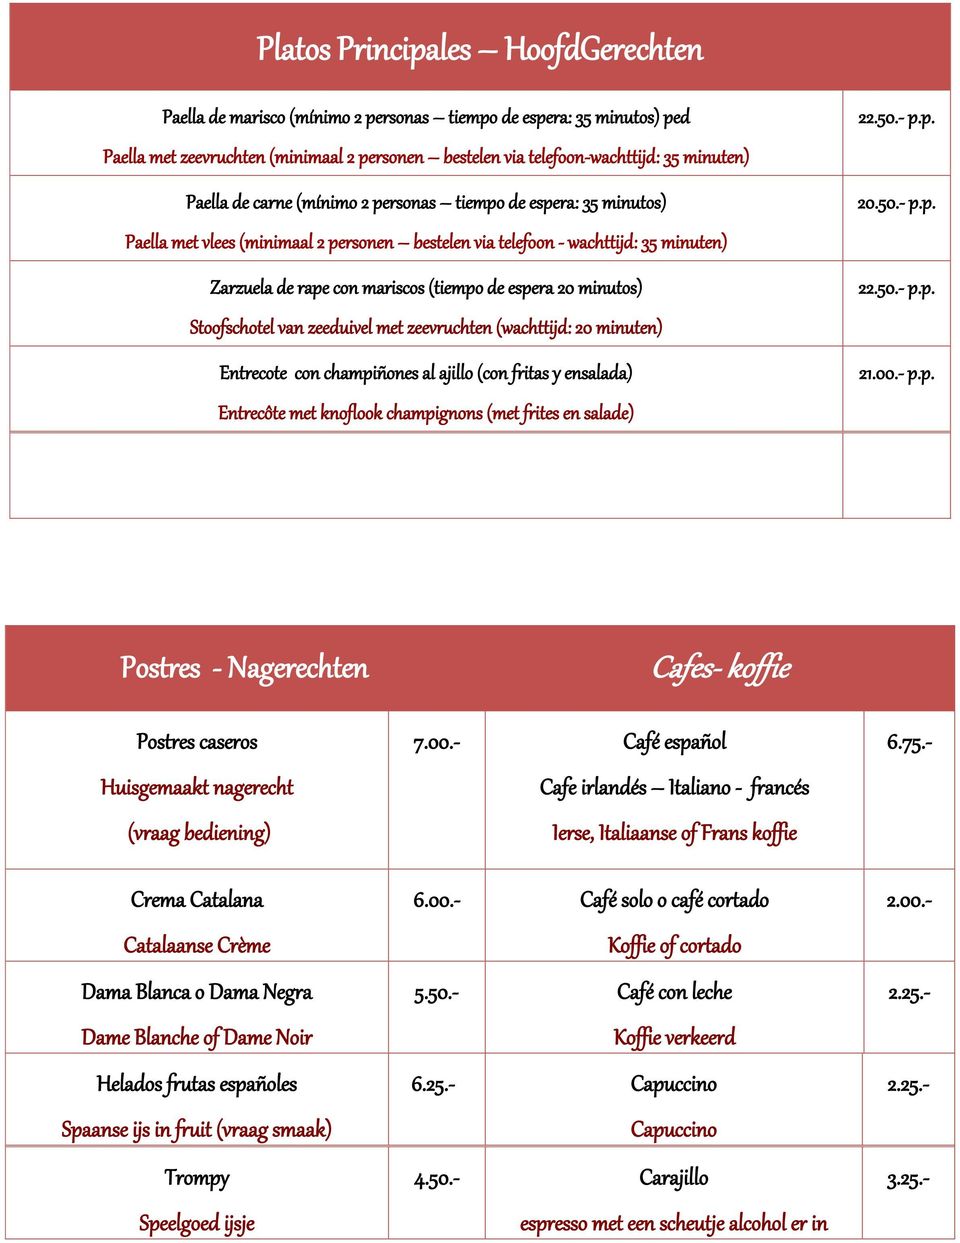 20 minutos) Stoofschotel van zeeduivel met zeevruchten (wachttijd: 20 minuten) Entrecote con champiñones al ajillo (con fritas y ensalada) Entrecôte met knoflook champignons (met frites en salade) 22.